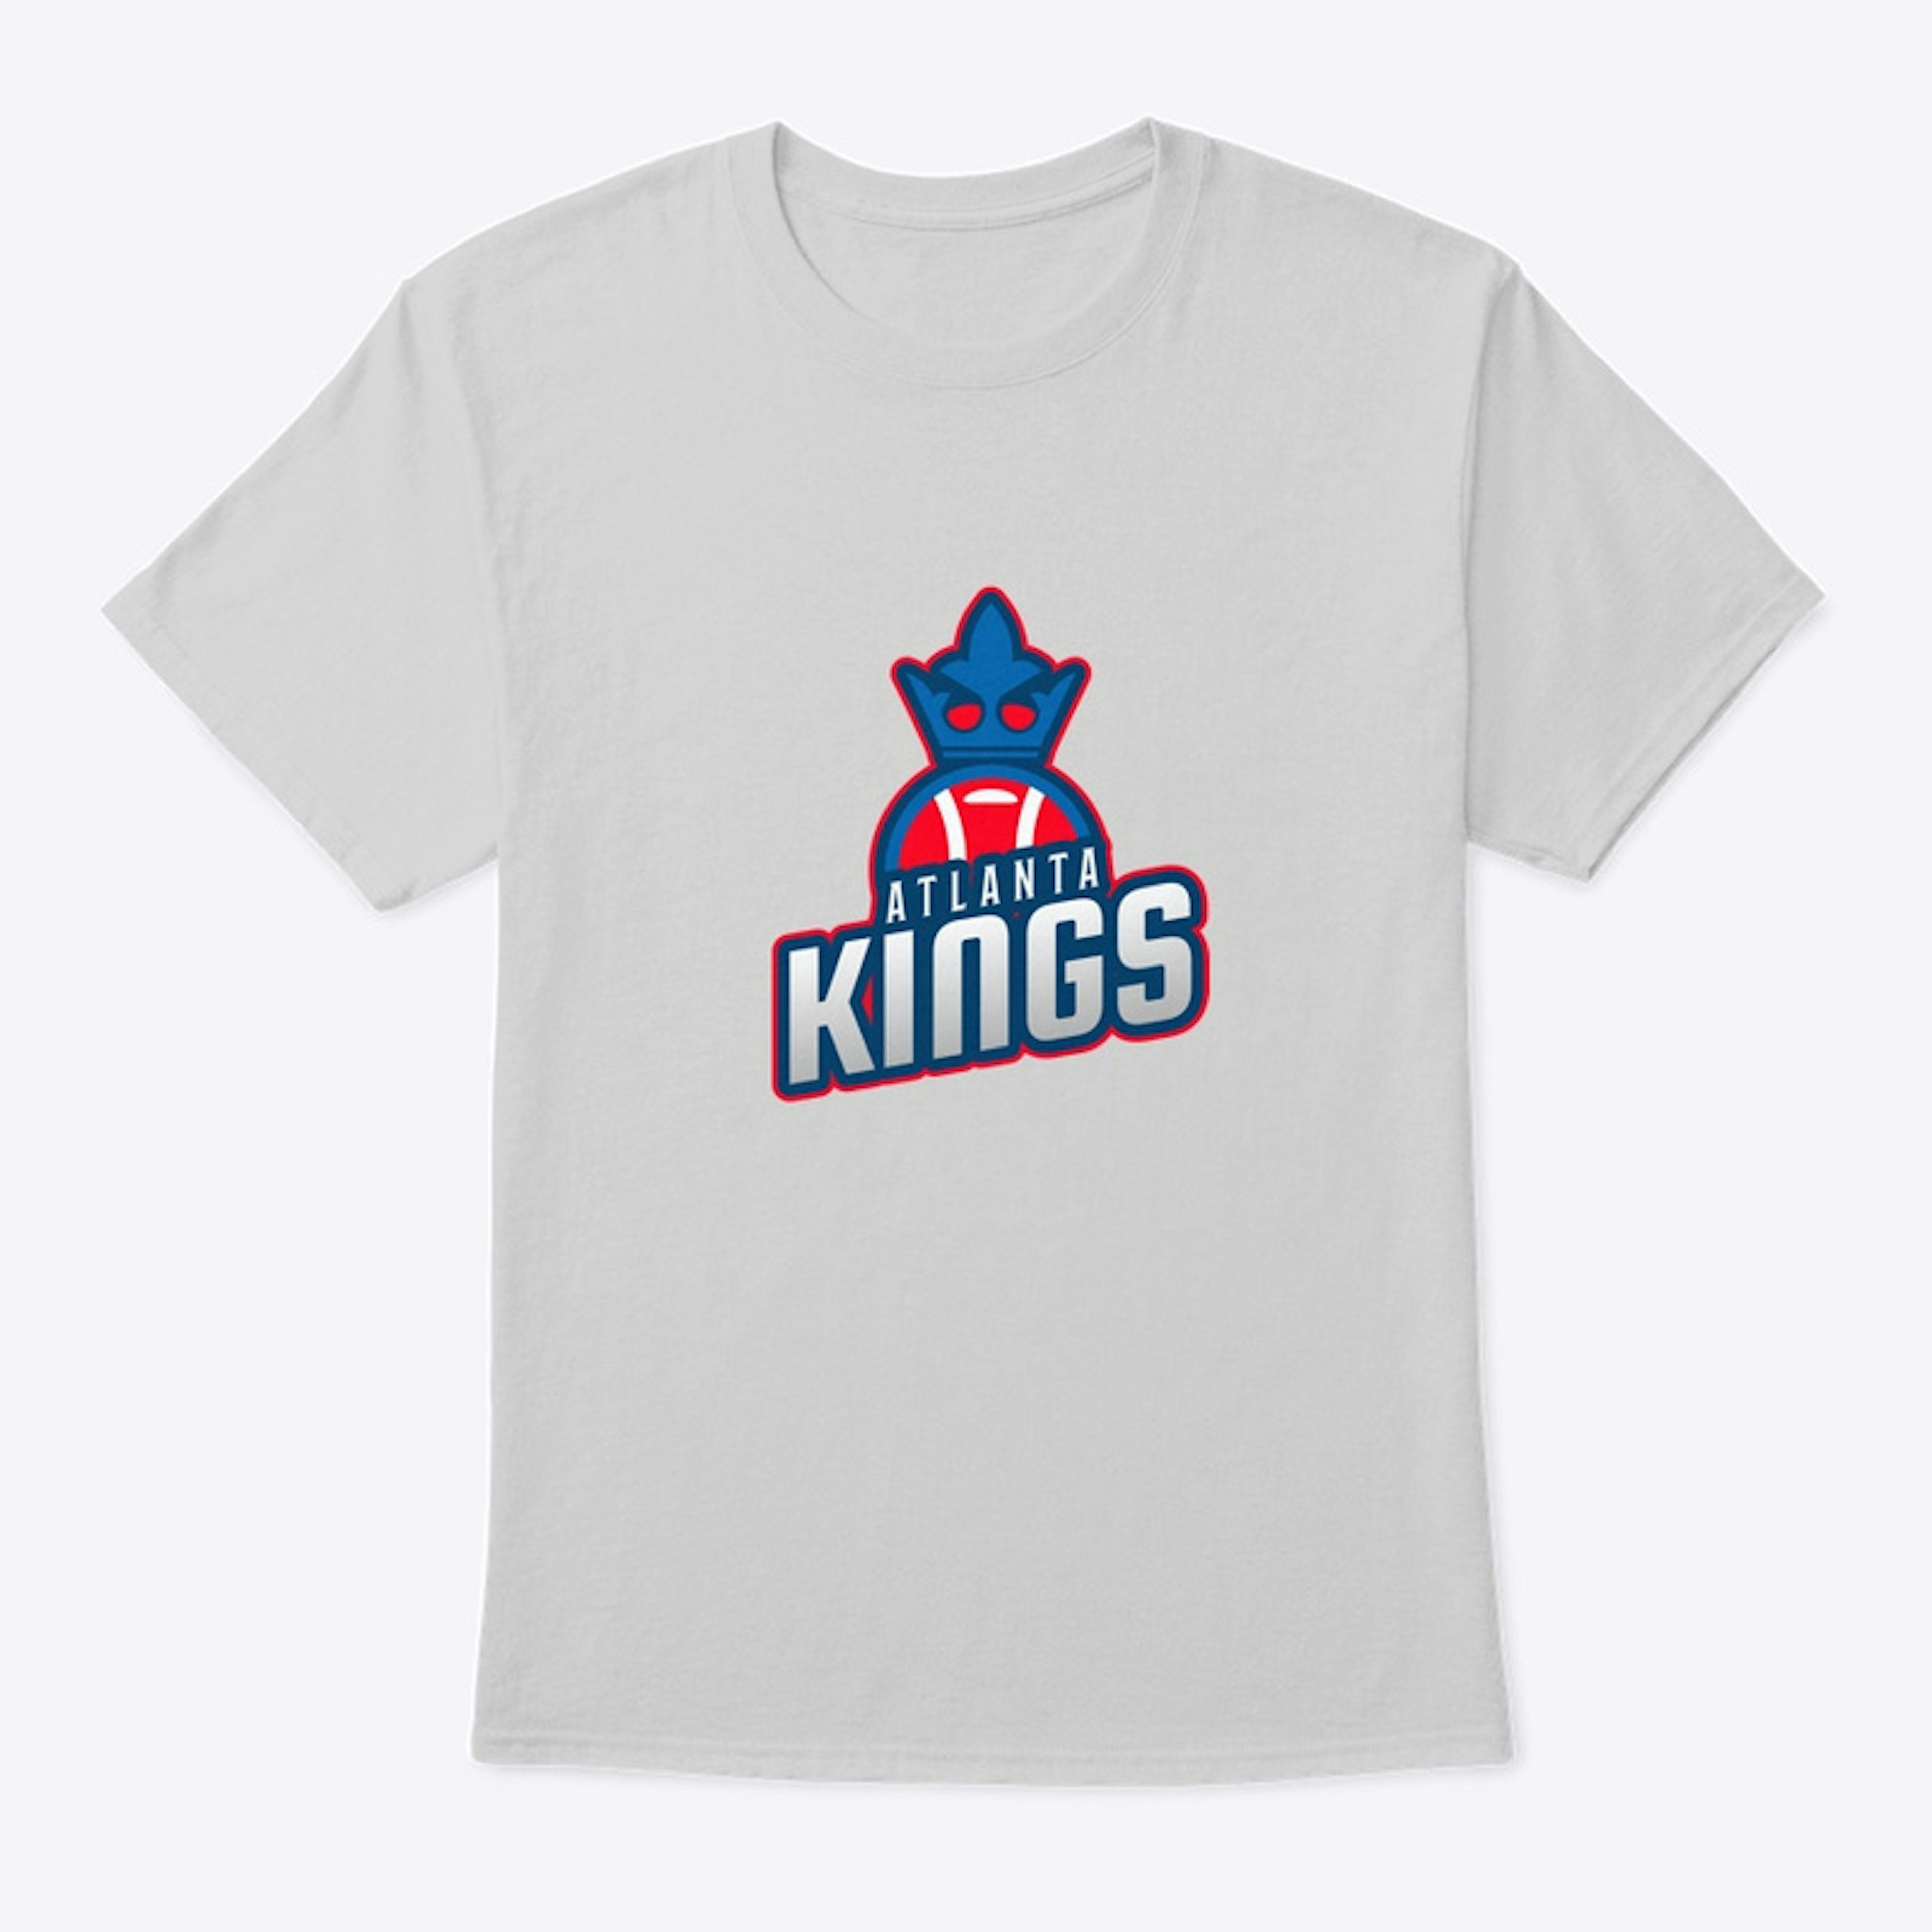 Atlanta Kings T-shirt